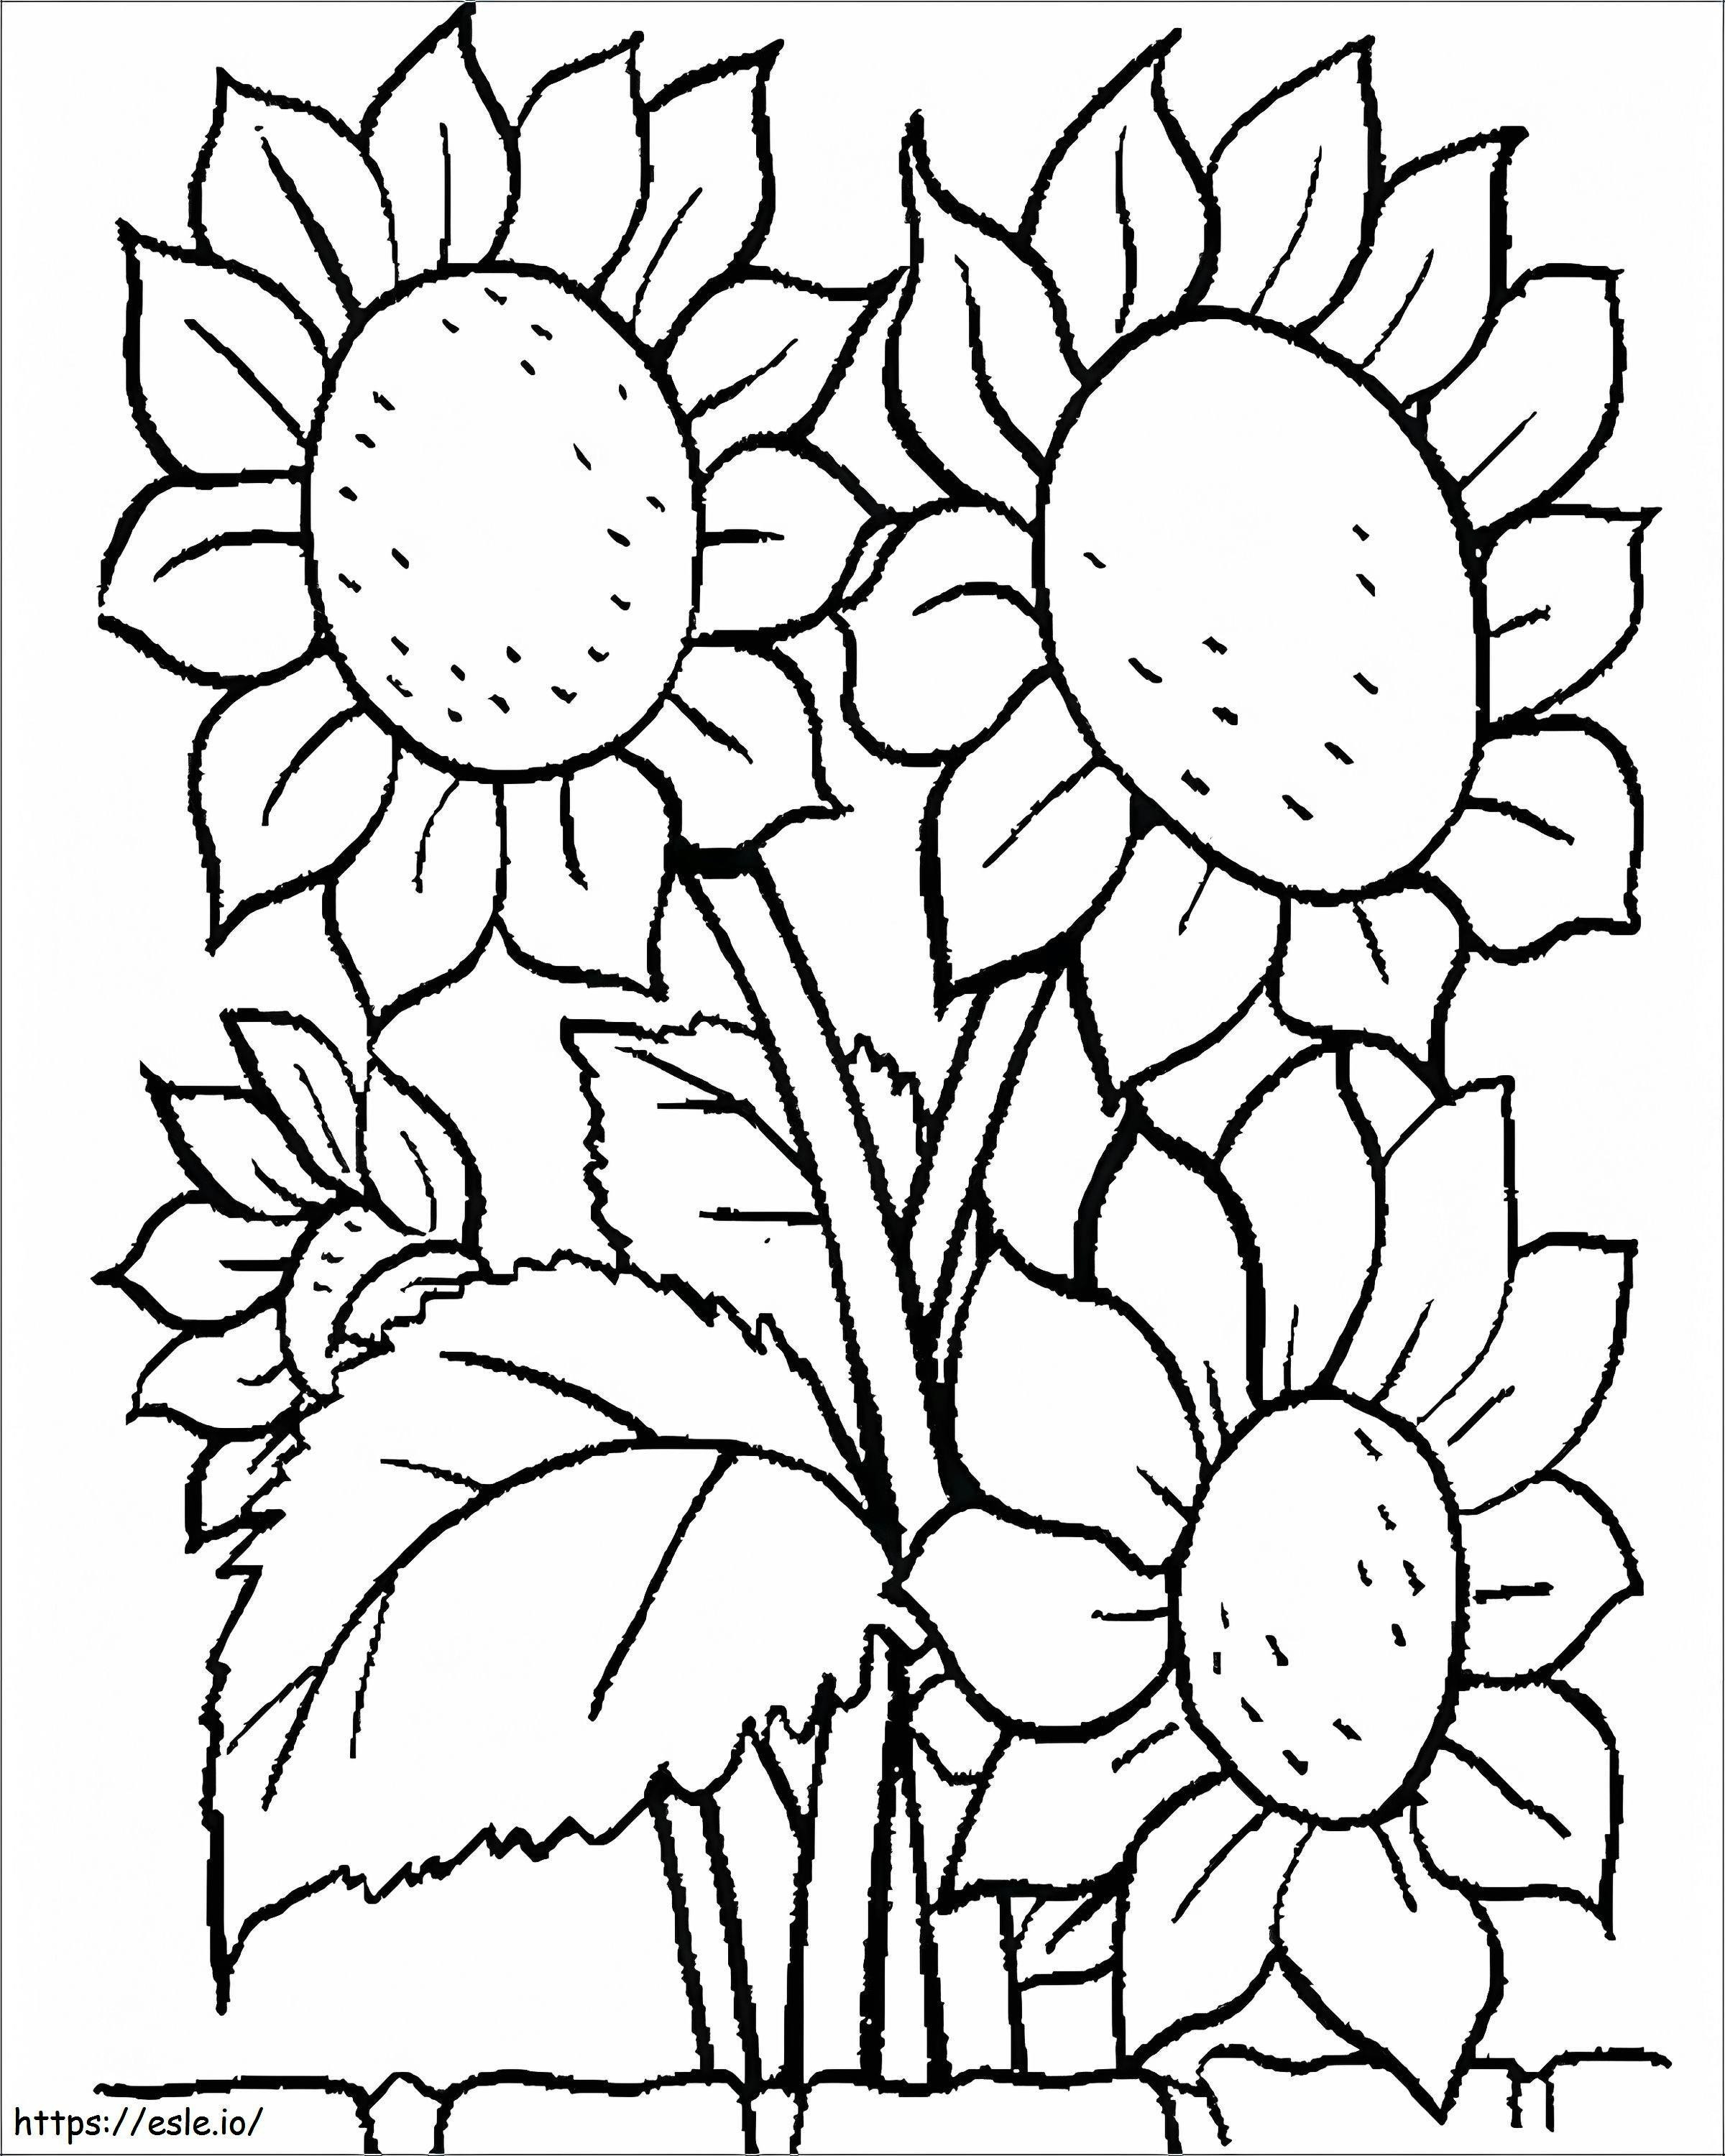 1539919156 Hojas para colorear de flores para preescolares Imágenes para colorear de flores imprimibles fáciles Imágenes para colorear de flores imprimibles Hojas para colorear de flores imprimibles para preescolares para colorear